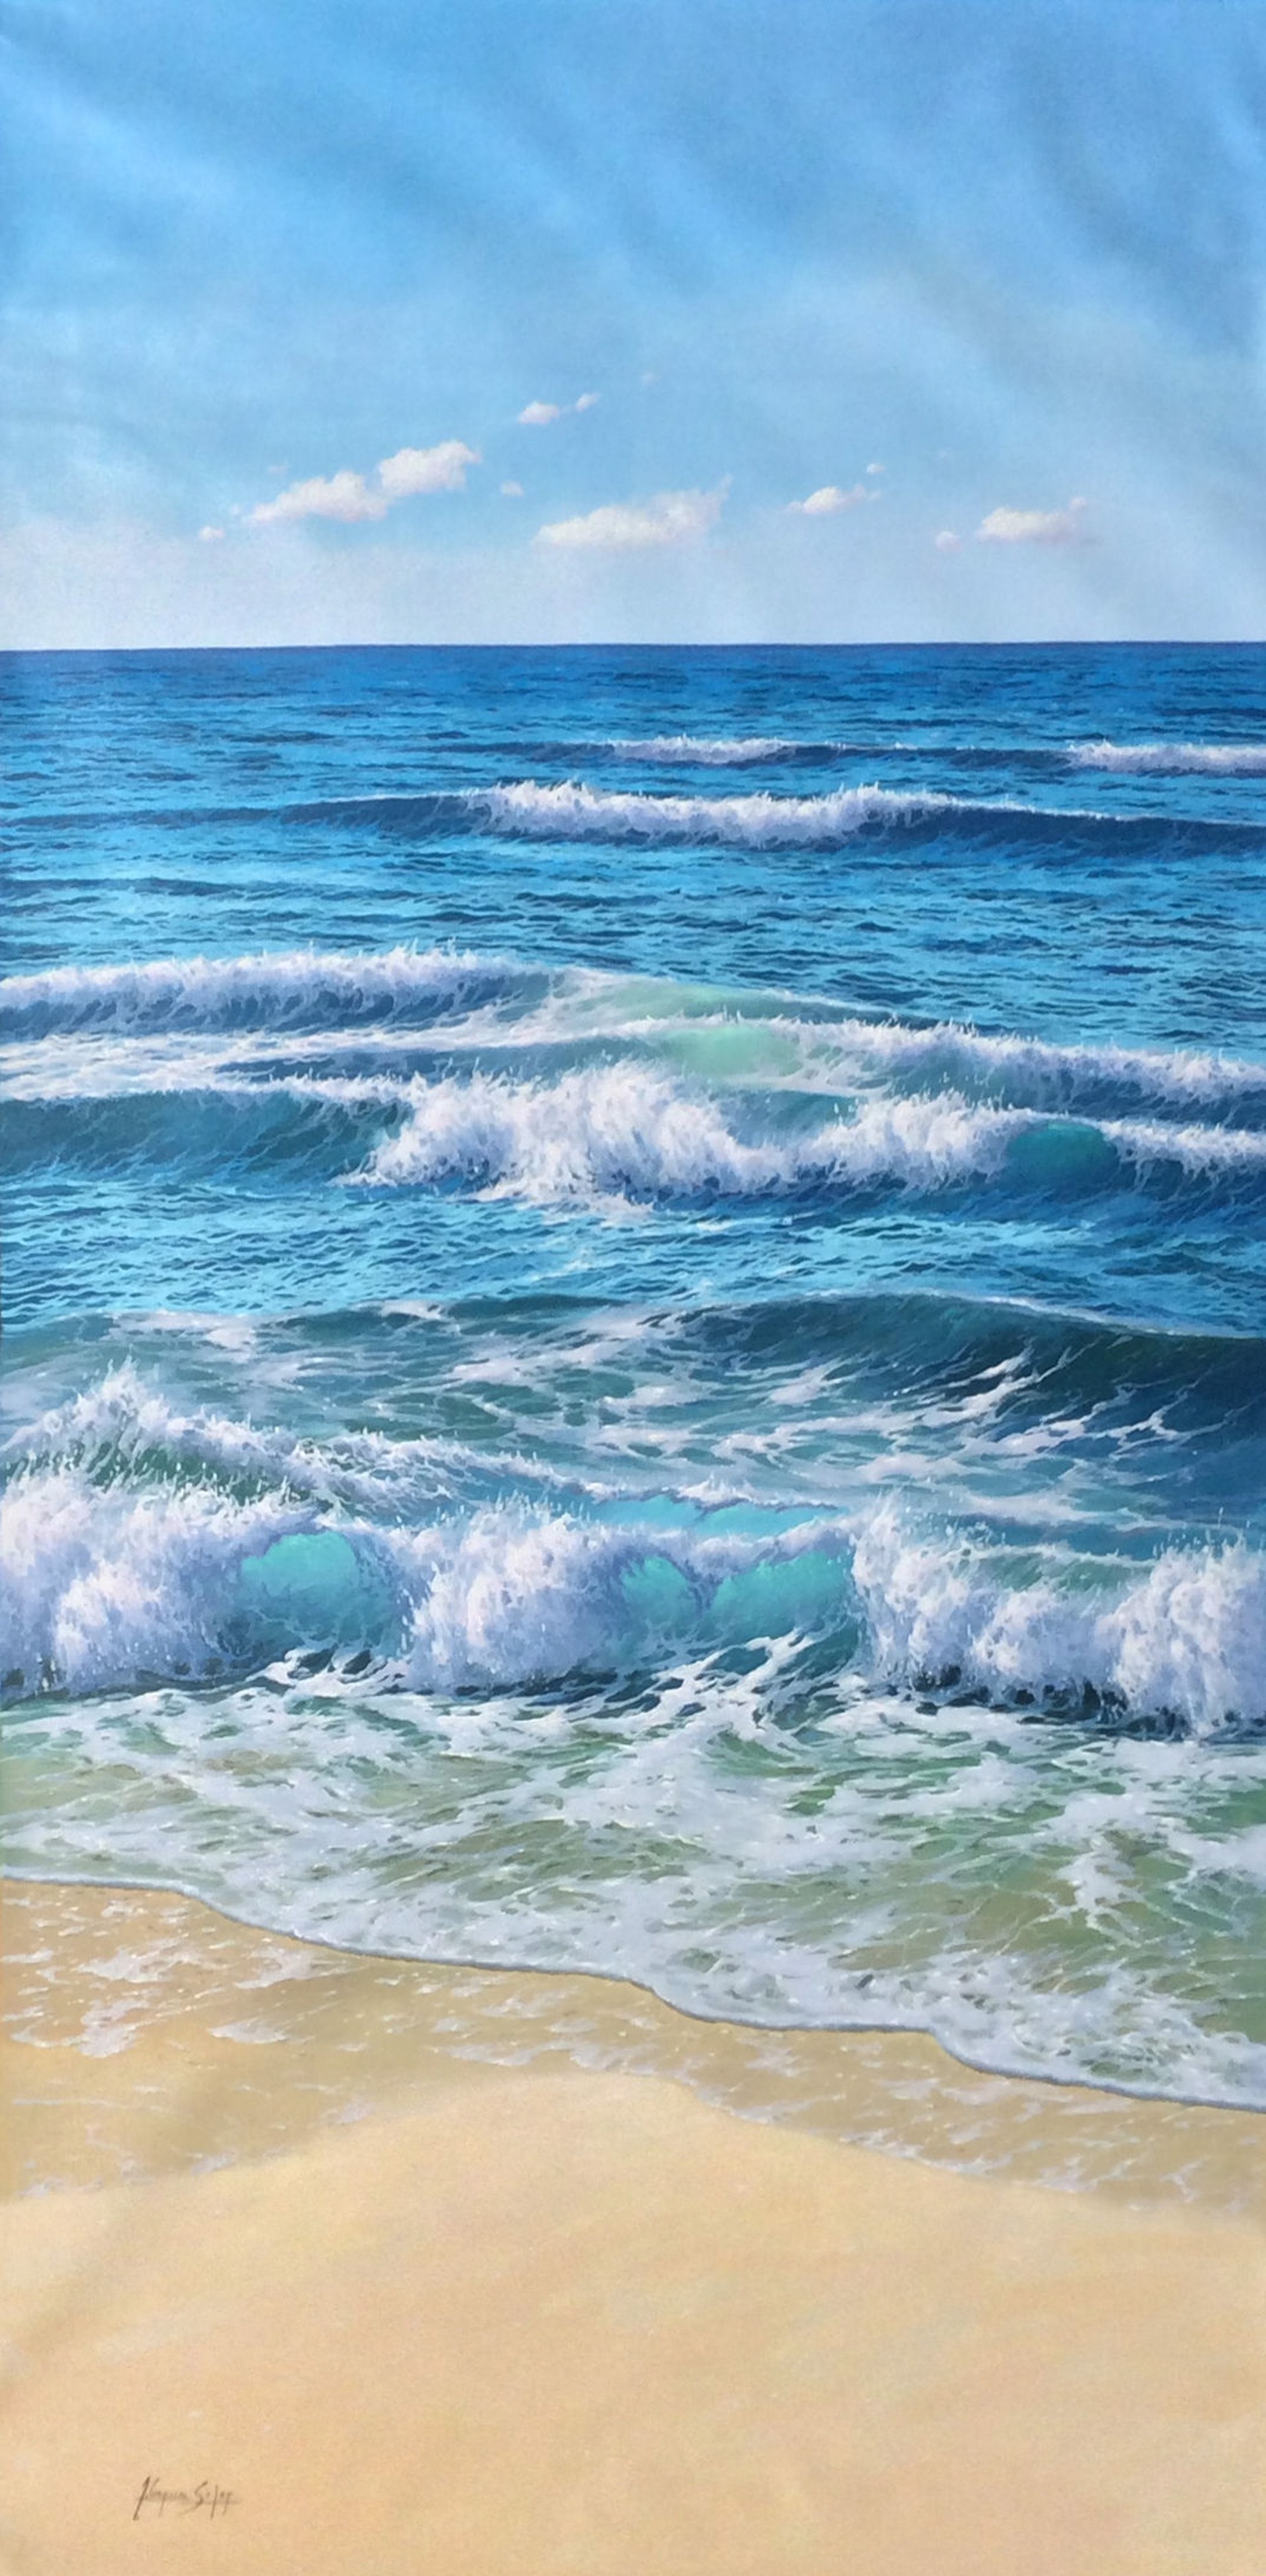 Waves Meet the Shore II by Antonio Soler